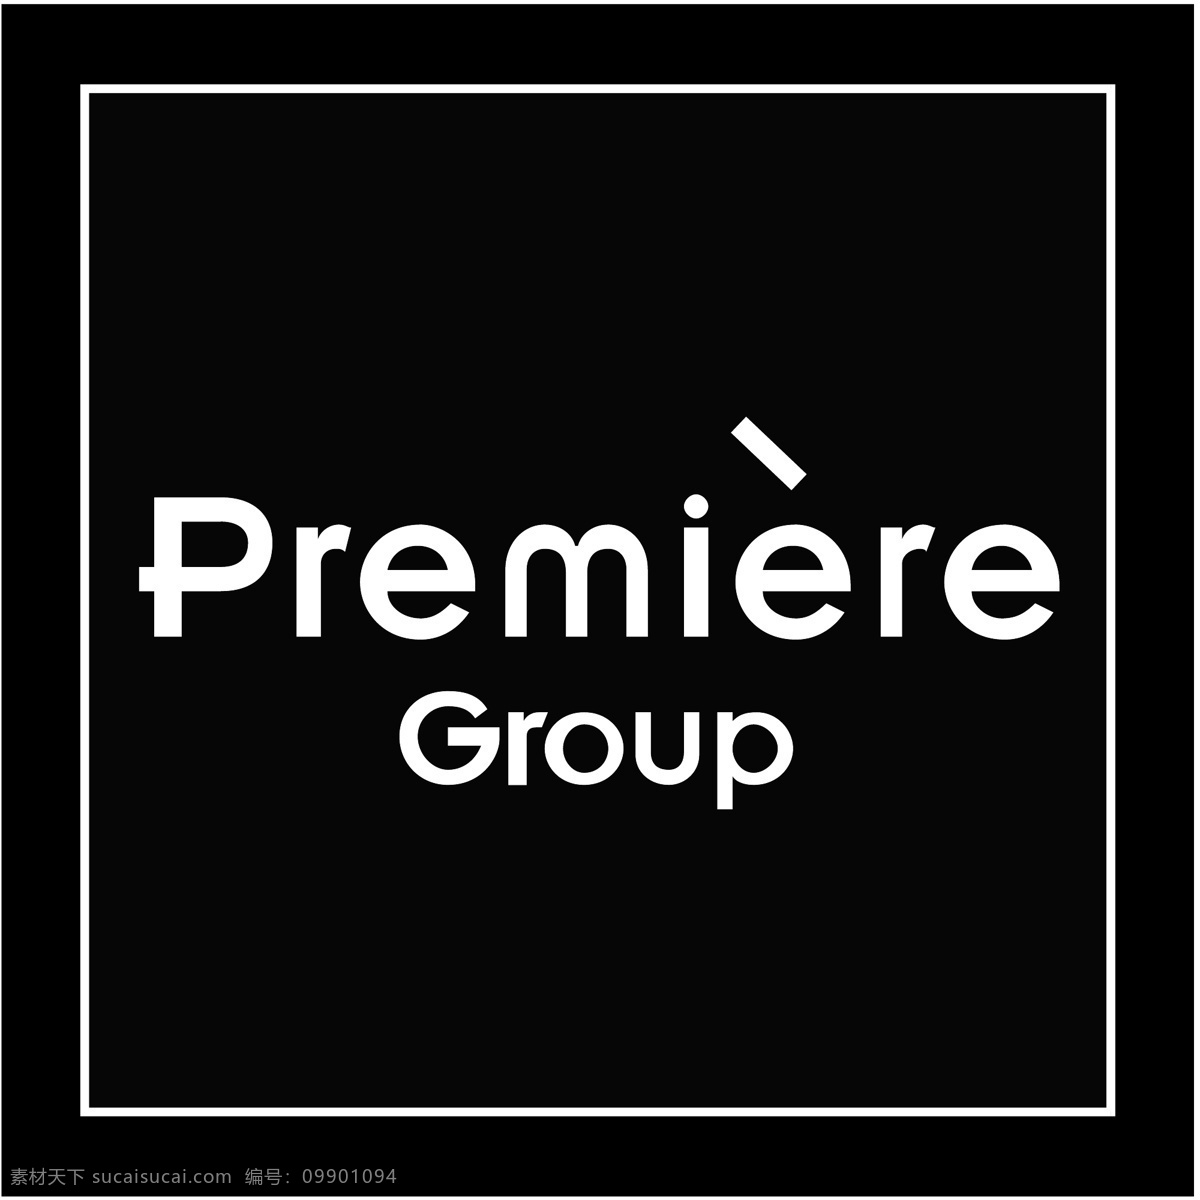 premiere 集团 标识 公司 免费 品牌 品牌标识 商标 矢量标志下载 免费矢量标识 矢量 psd源文件 logo设计